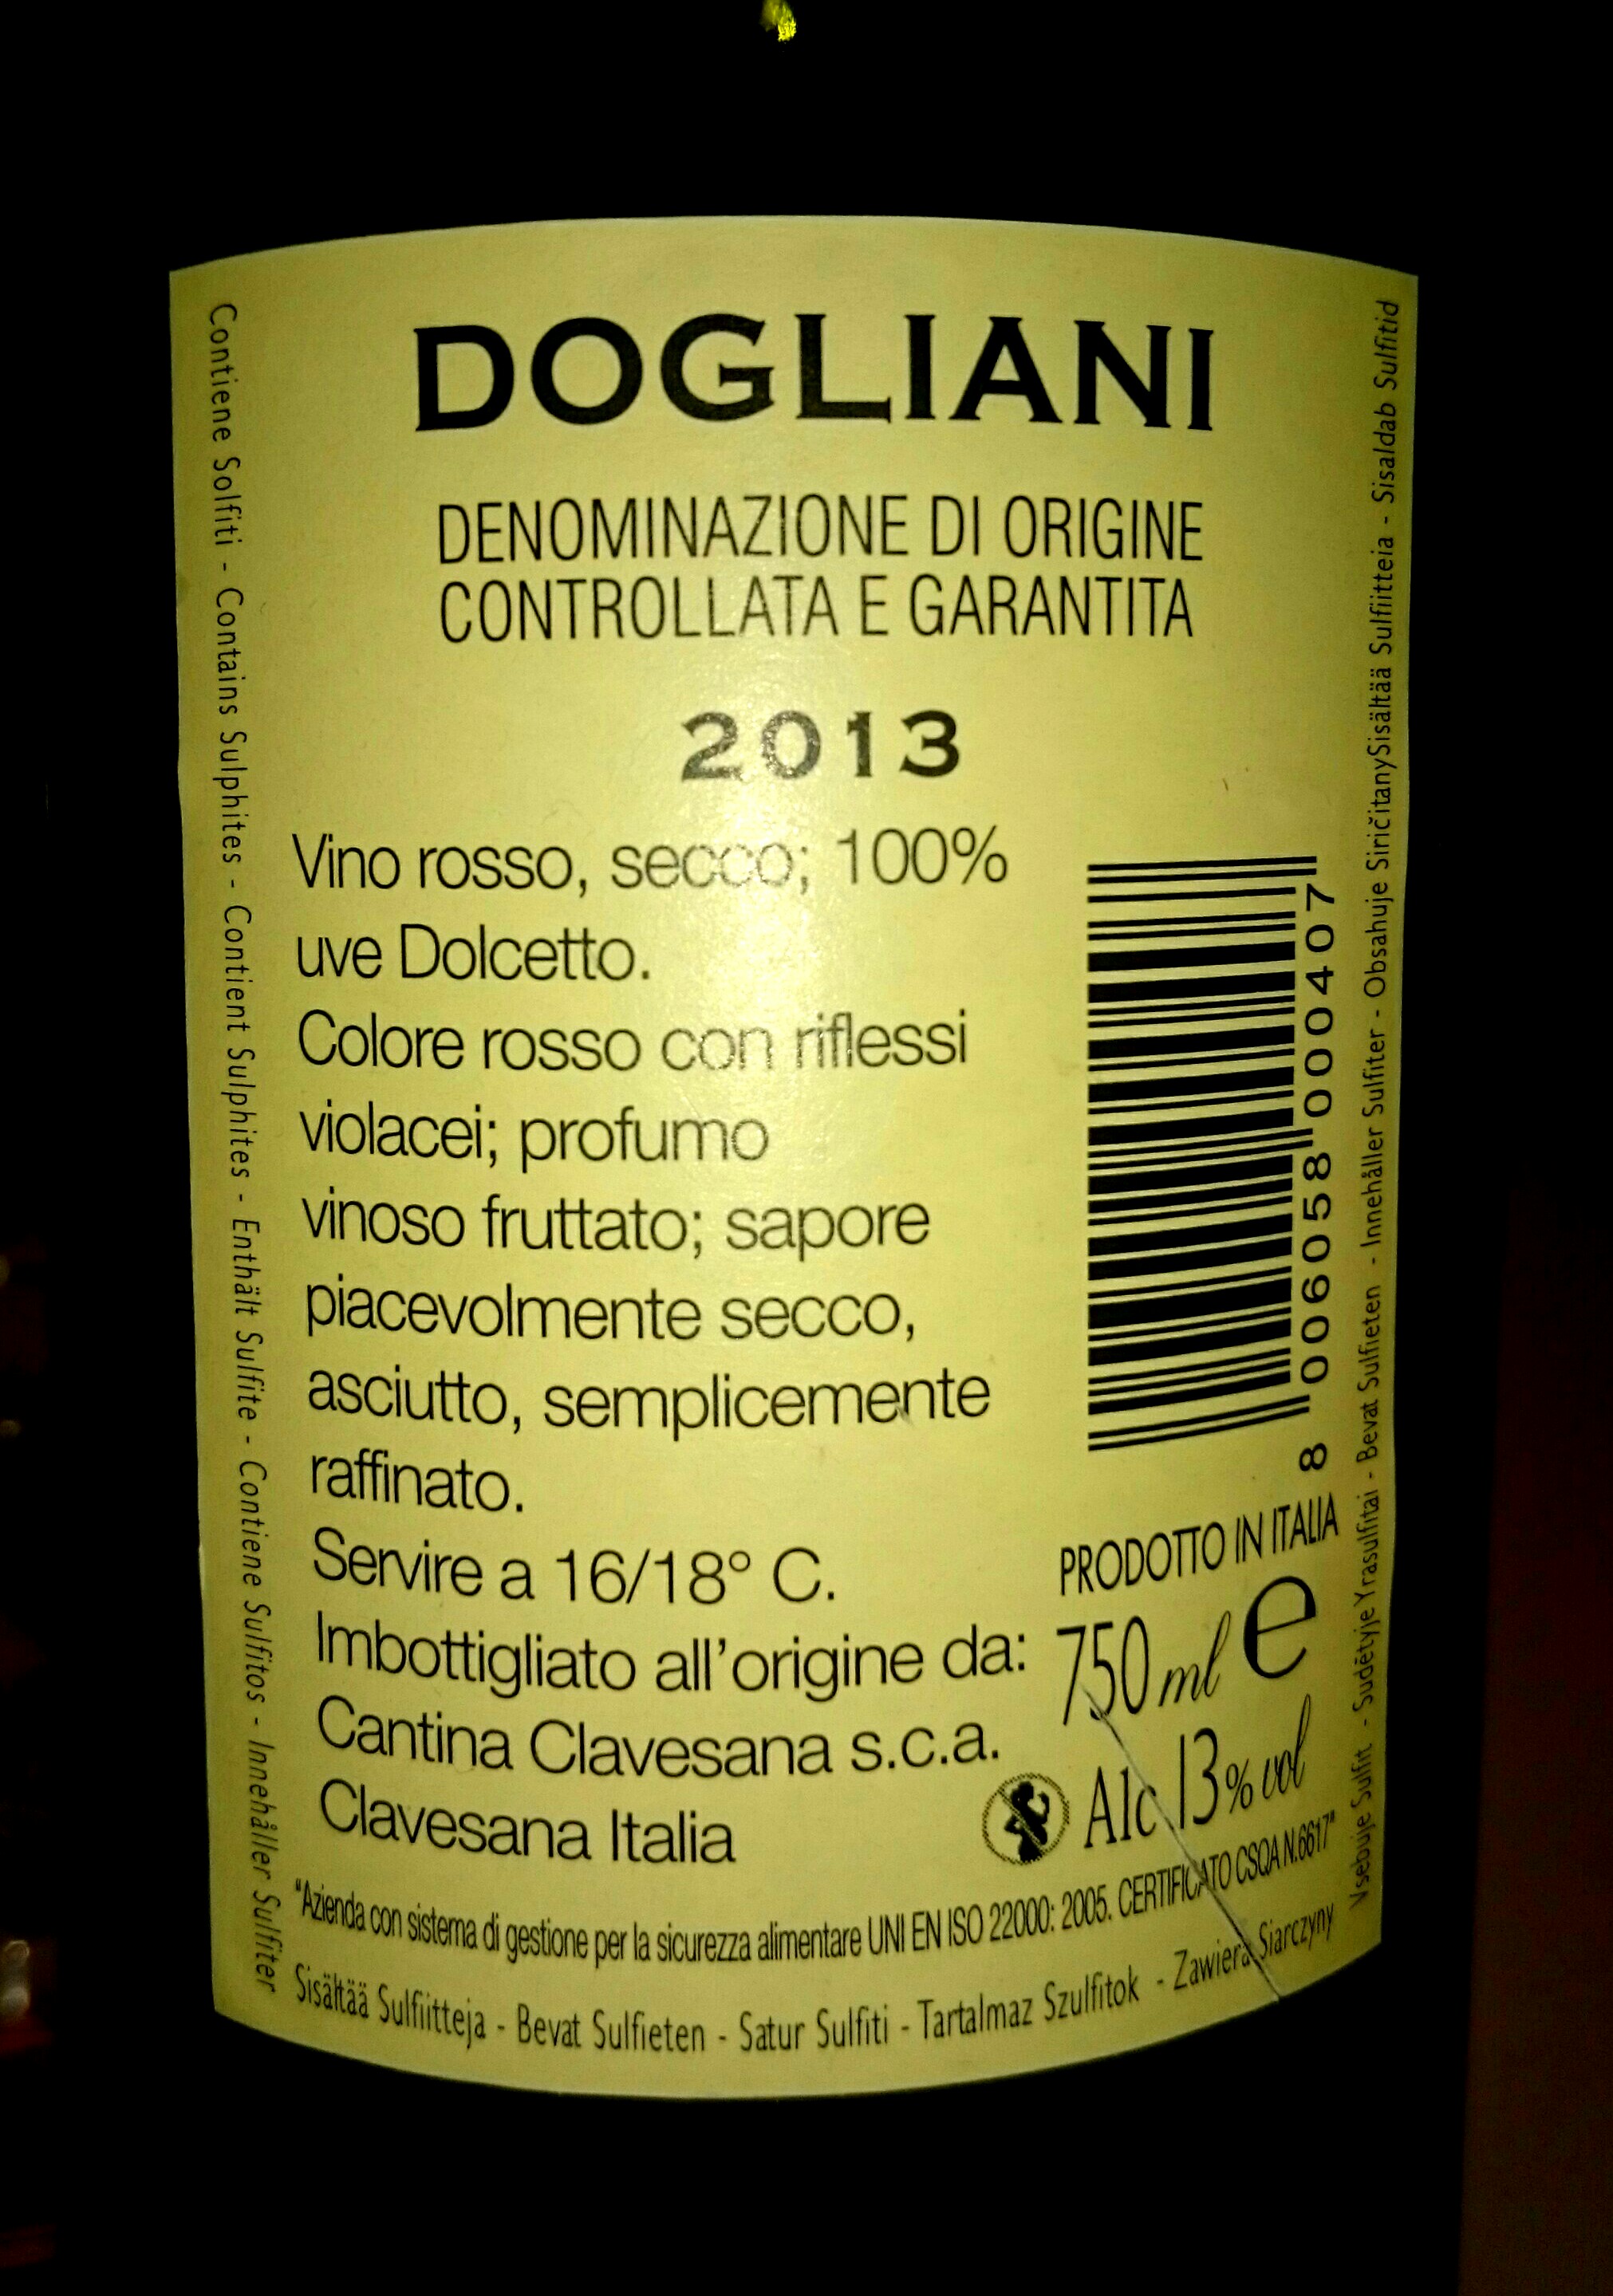 Вино Дольяни. Вино Сапор. Denominazione di origine controllata e garantita игристое. Вино Prosecco denominazione di origine controllata 1,5 литра.